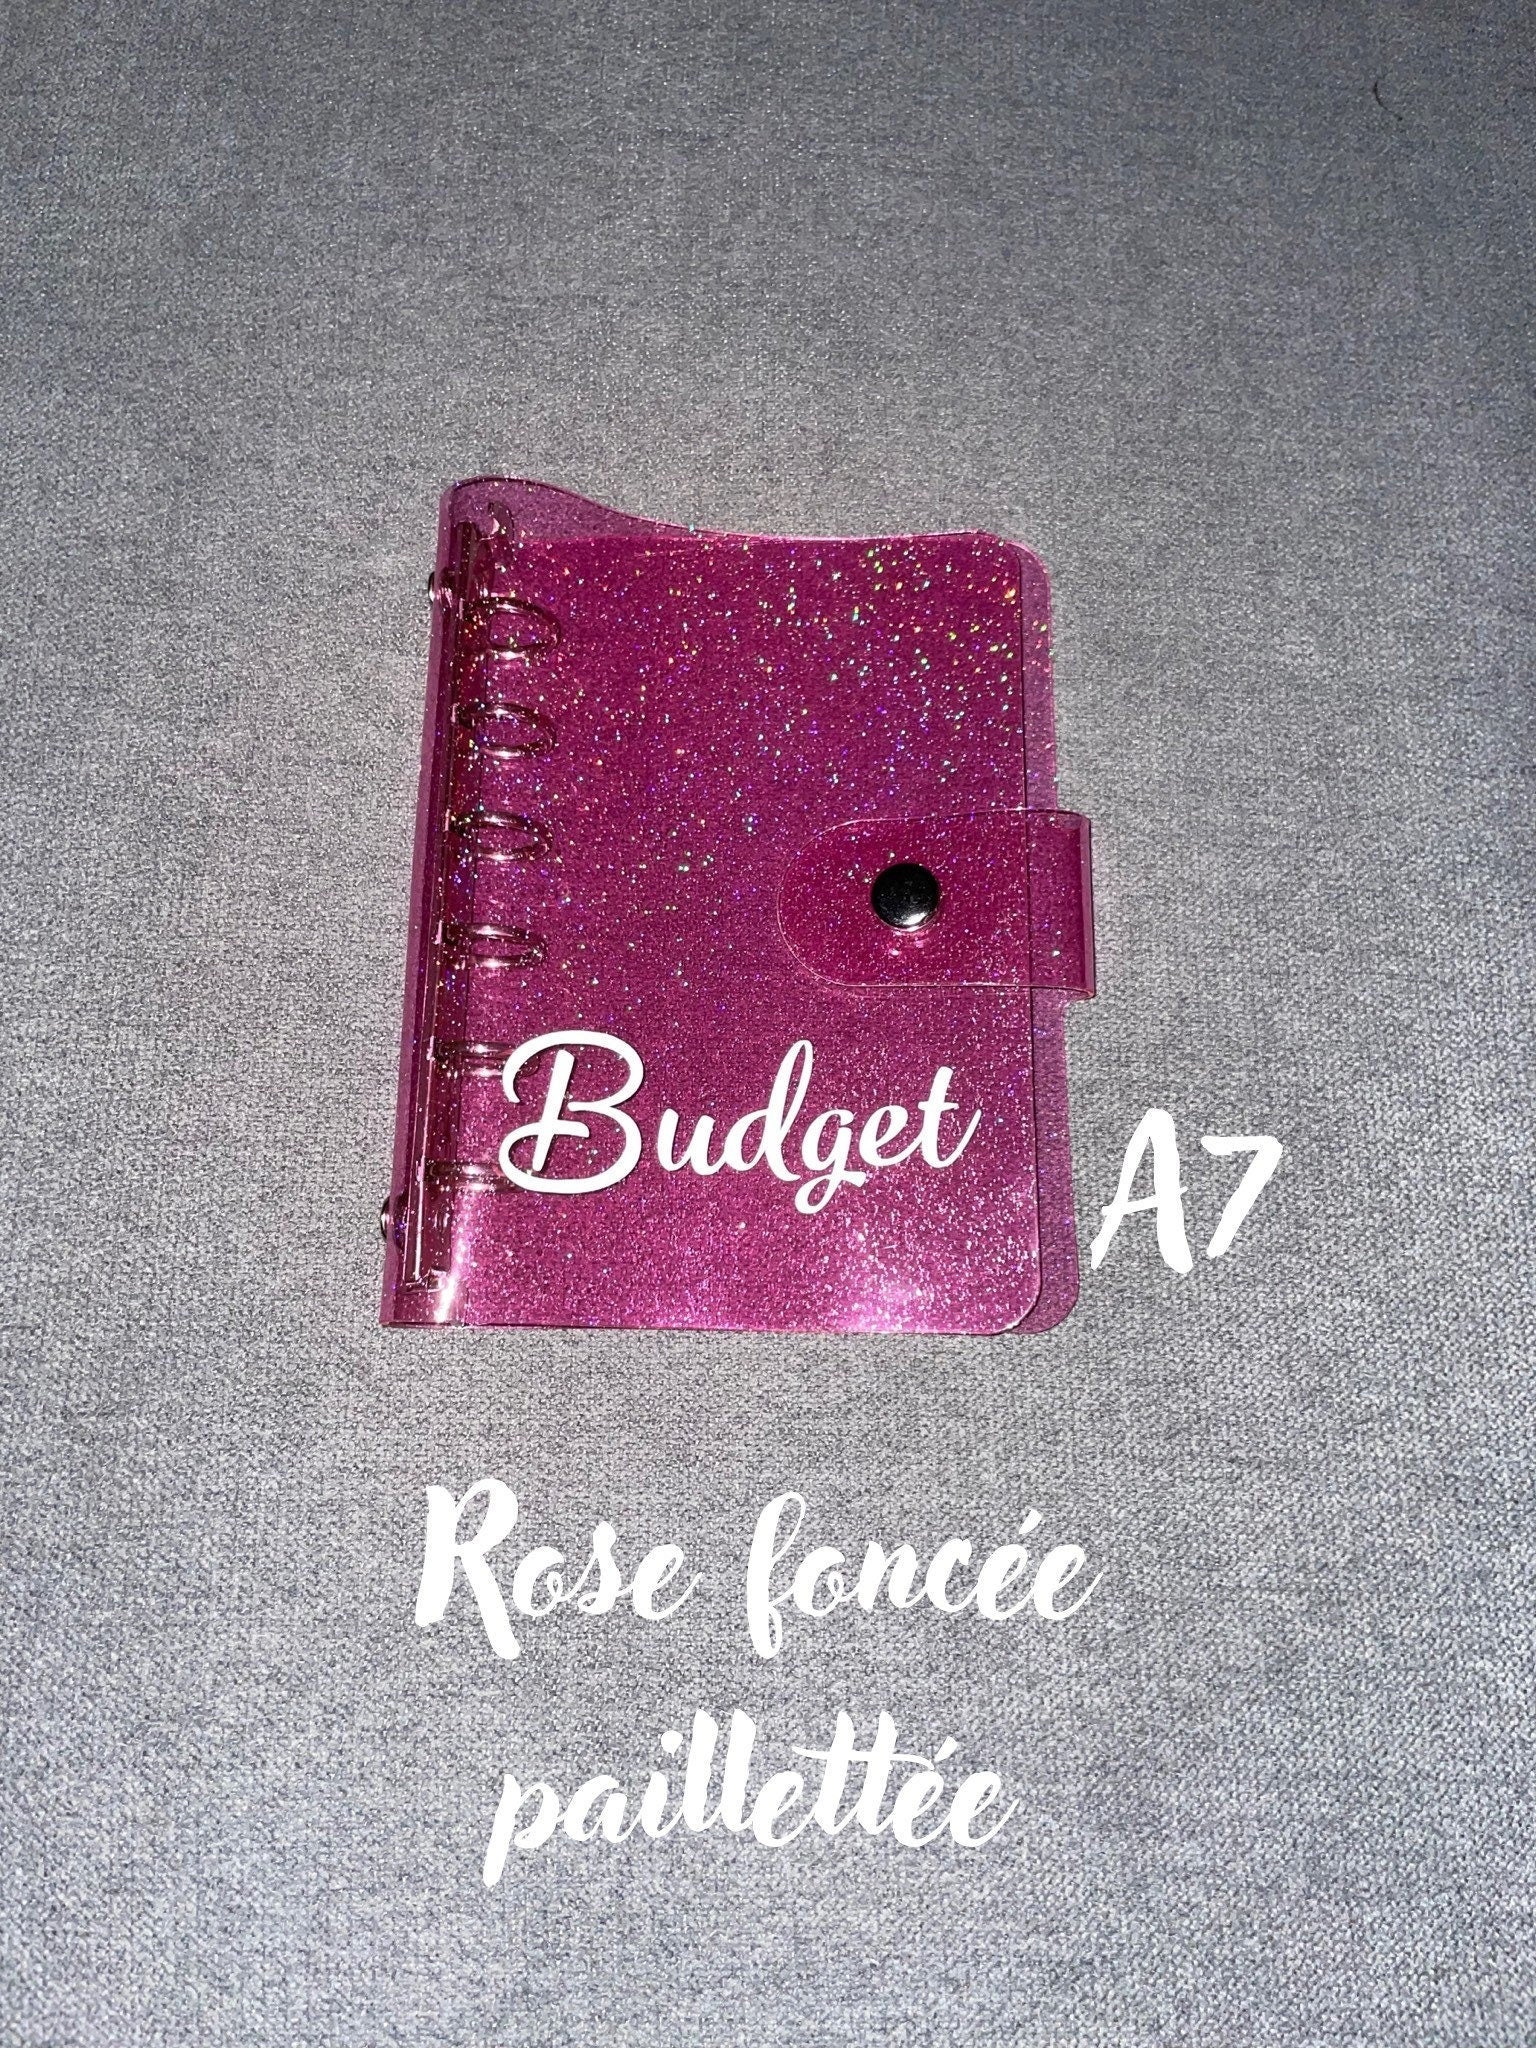 Classeur budget A7 enveloppes personnalisées #classeurbudgétaire #enve